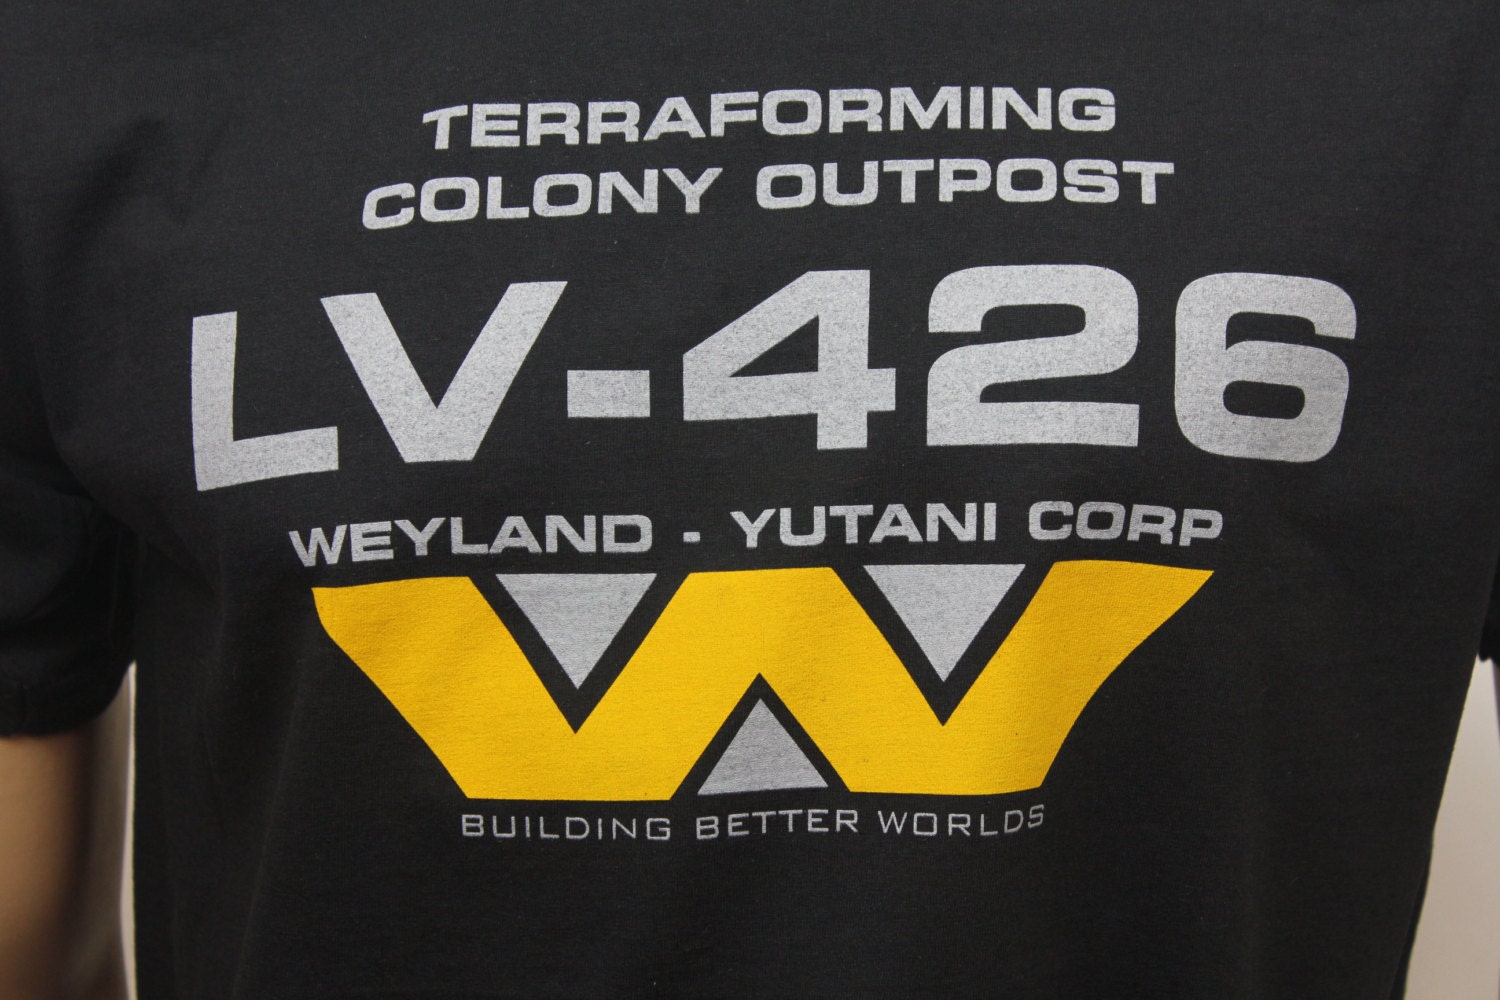 Camiseta de LV-426 para hombres, Camisa lisa de gran peso, con frase  Aliens, que viene en su mayoría por la noche - AliExpress